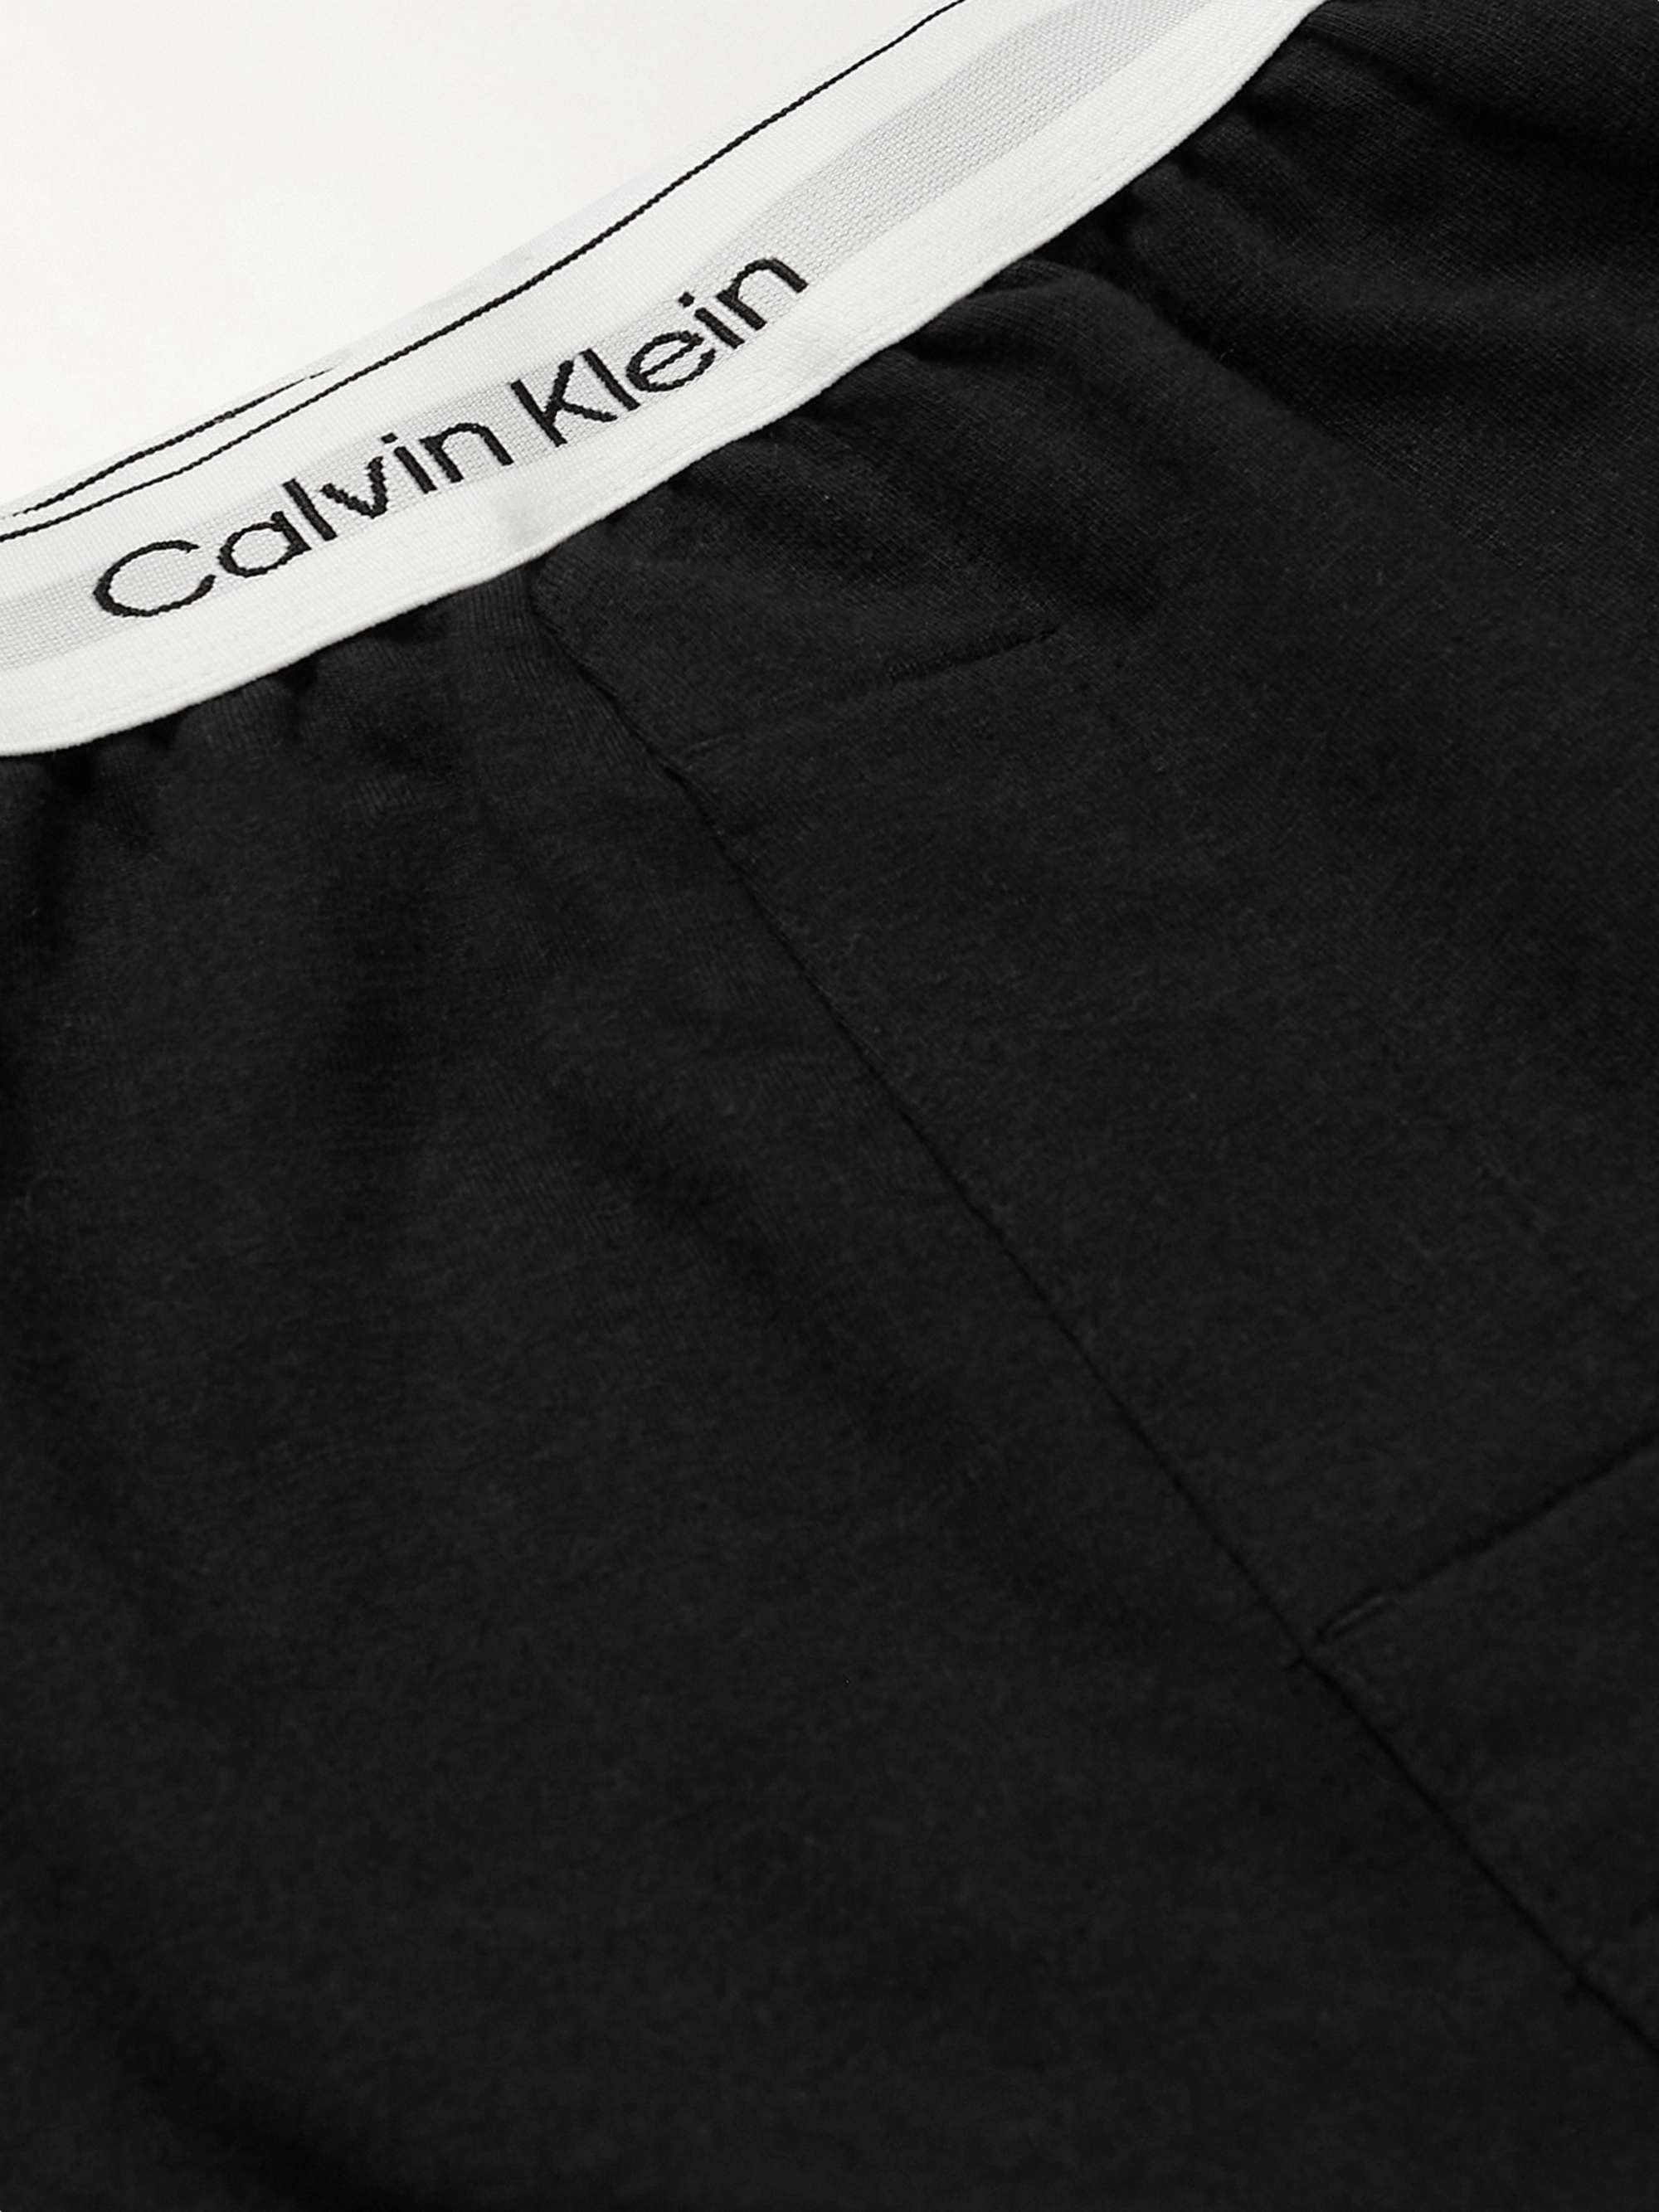 CALVIN KLEIN UNDERWEAR Modern Cotton-Blend Jersey Tapered Sweatpants